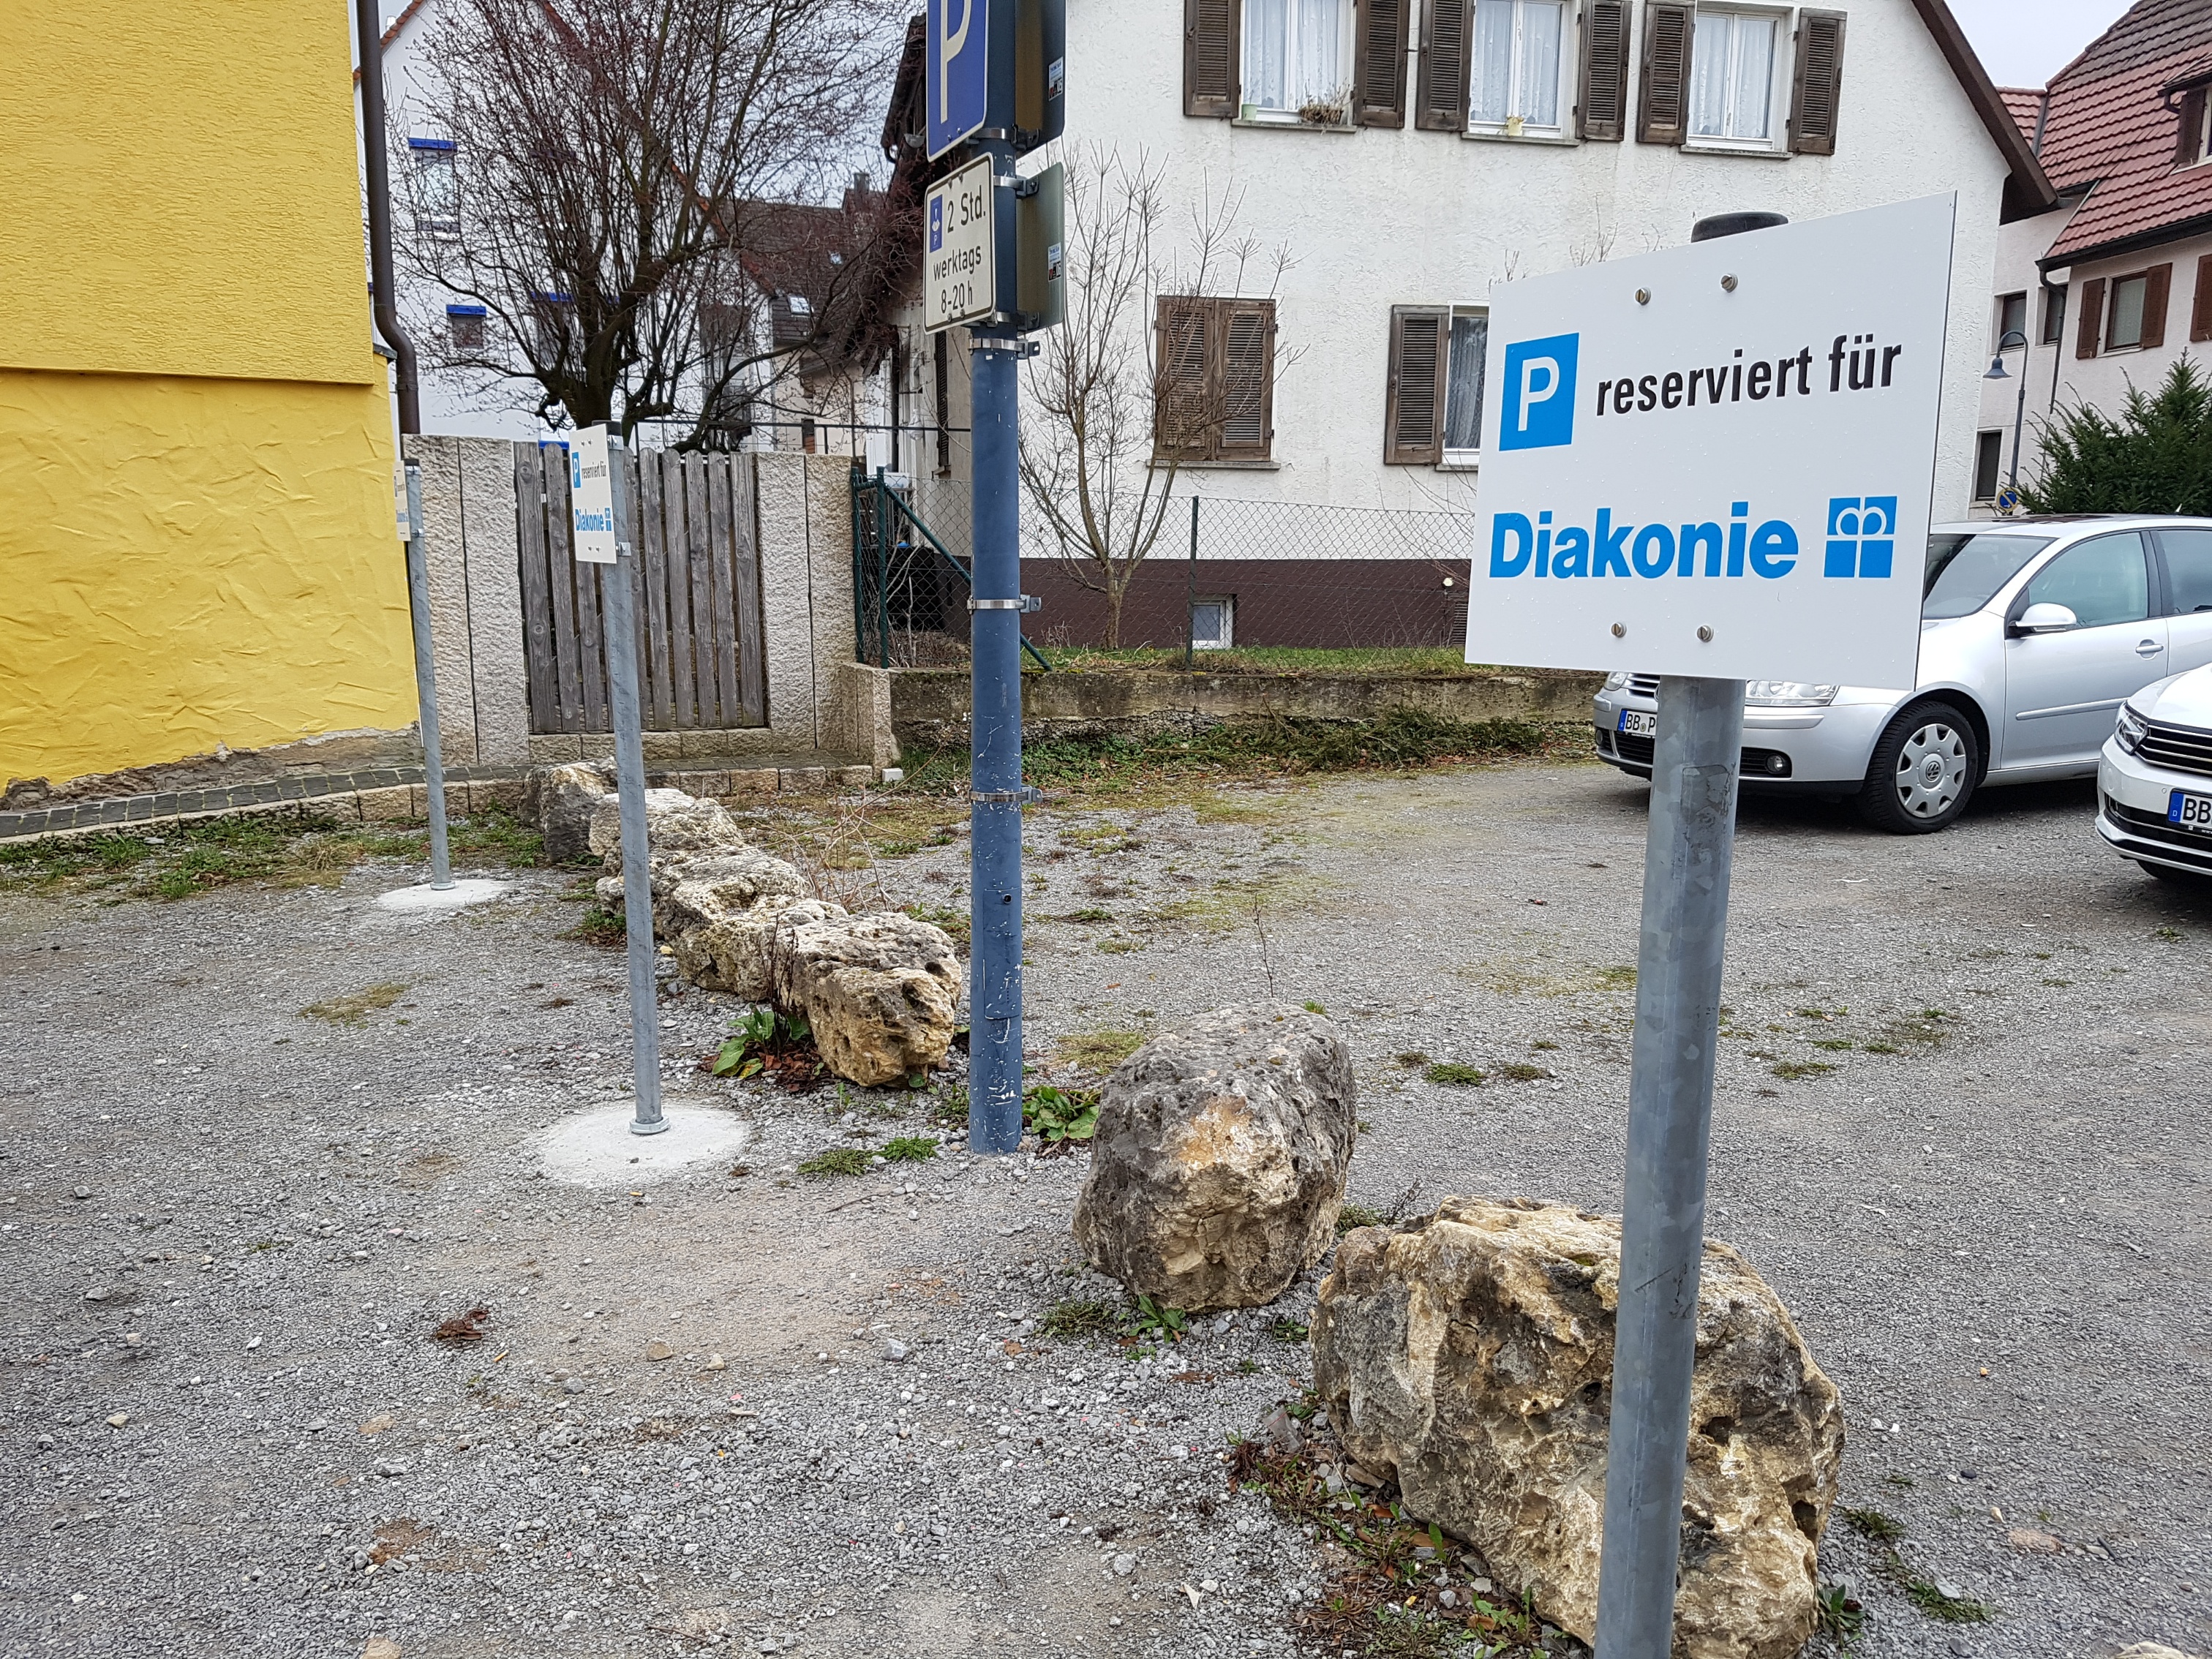  Parkplatz der Diakonie - Bild 2 